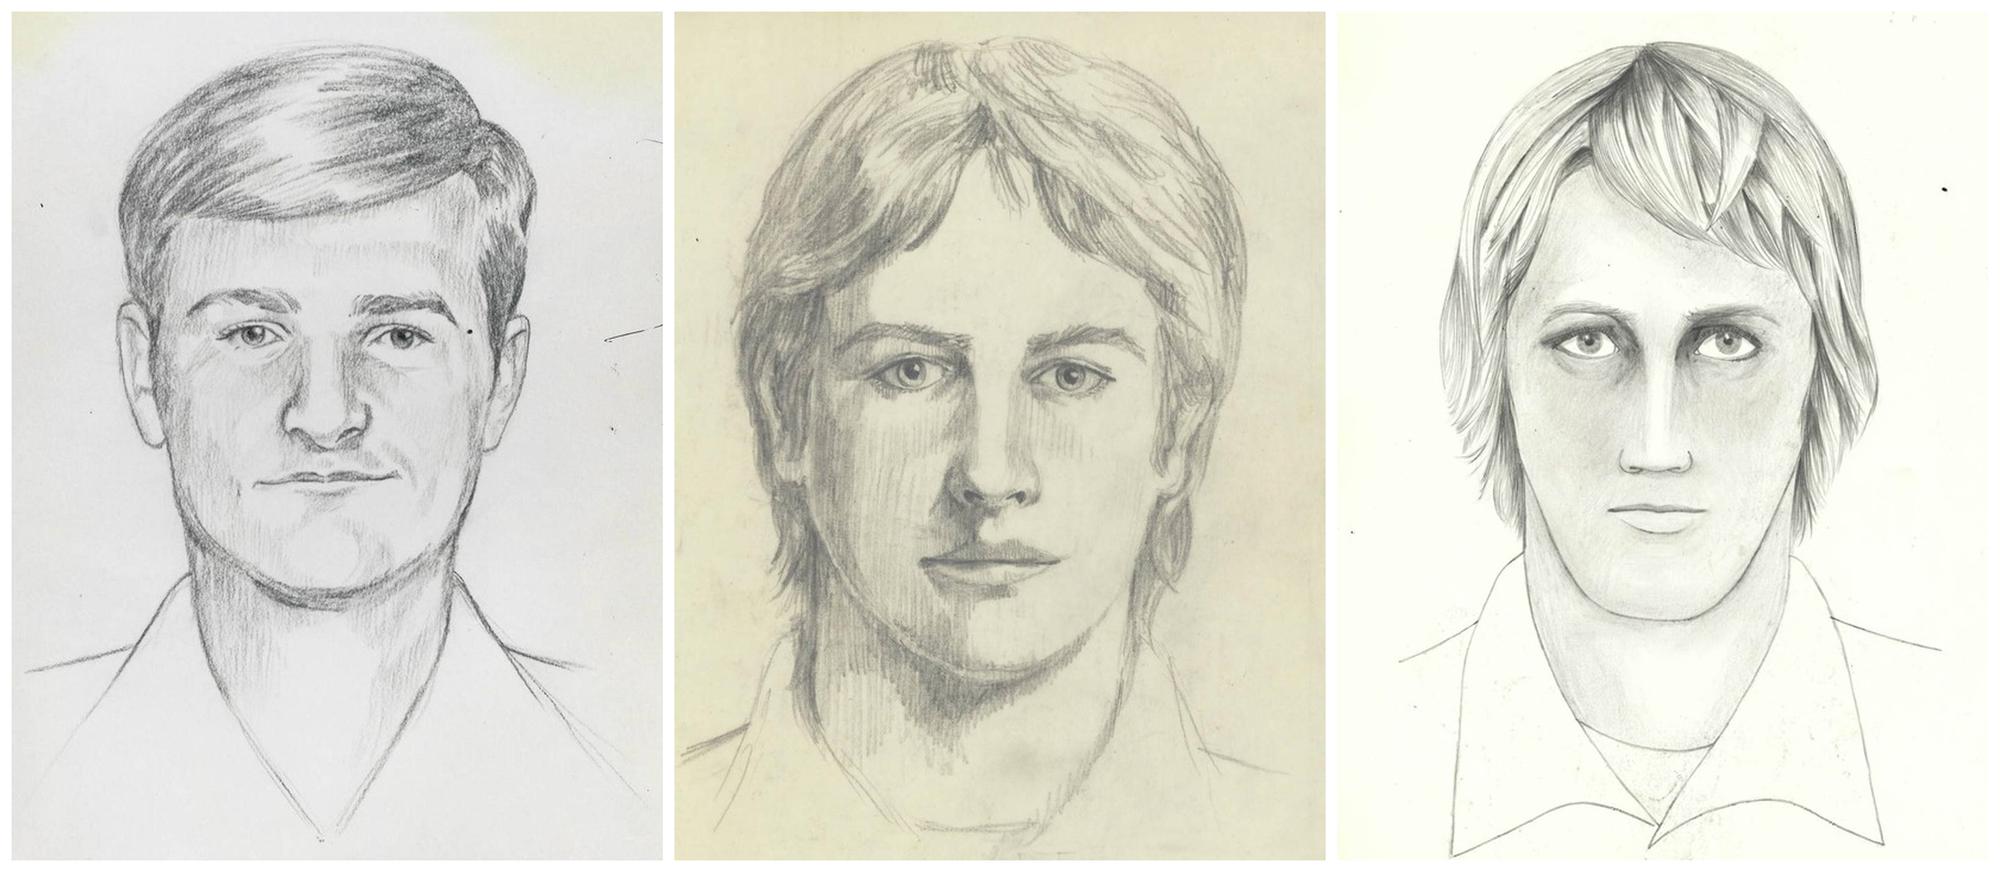 Des portraits-robots de celui qui fut surnommé le Golden State Killer. [Reuters - FBI/Handout]